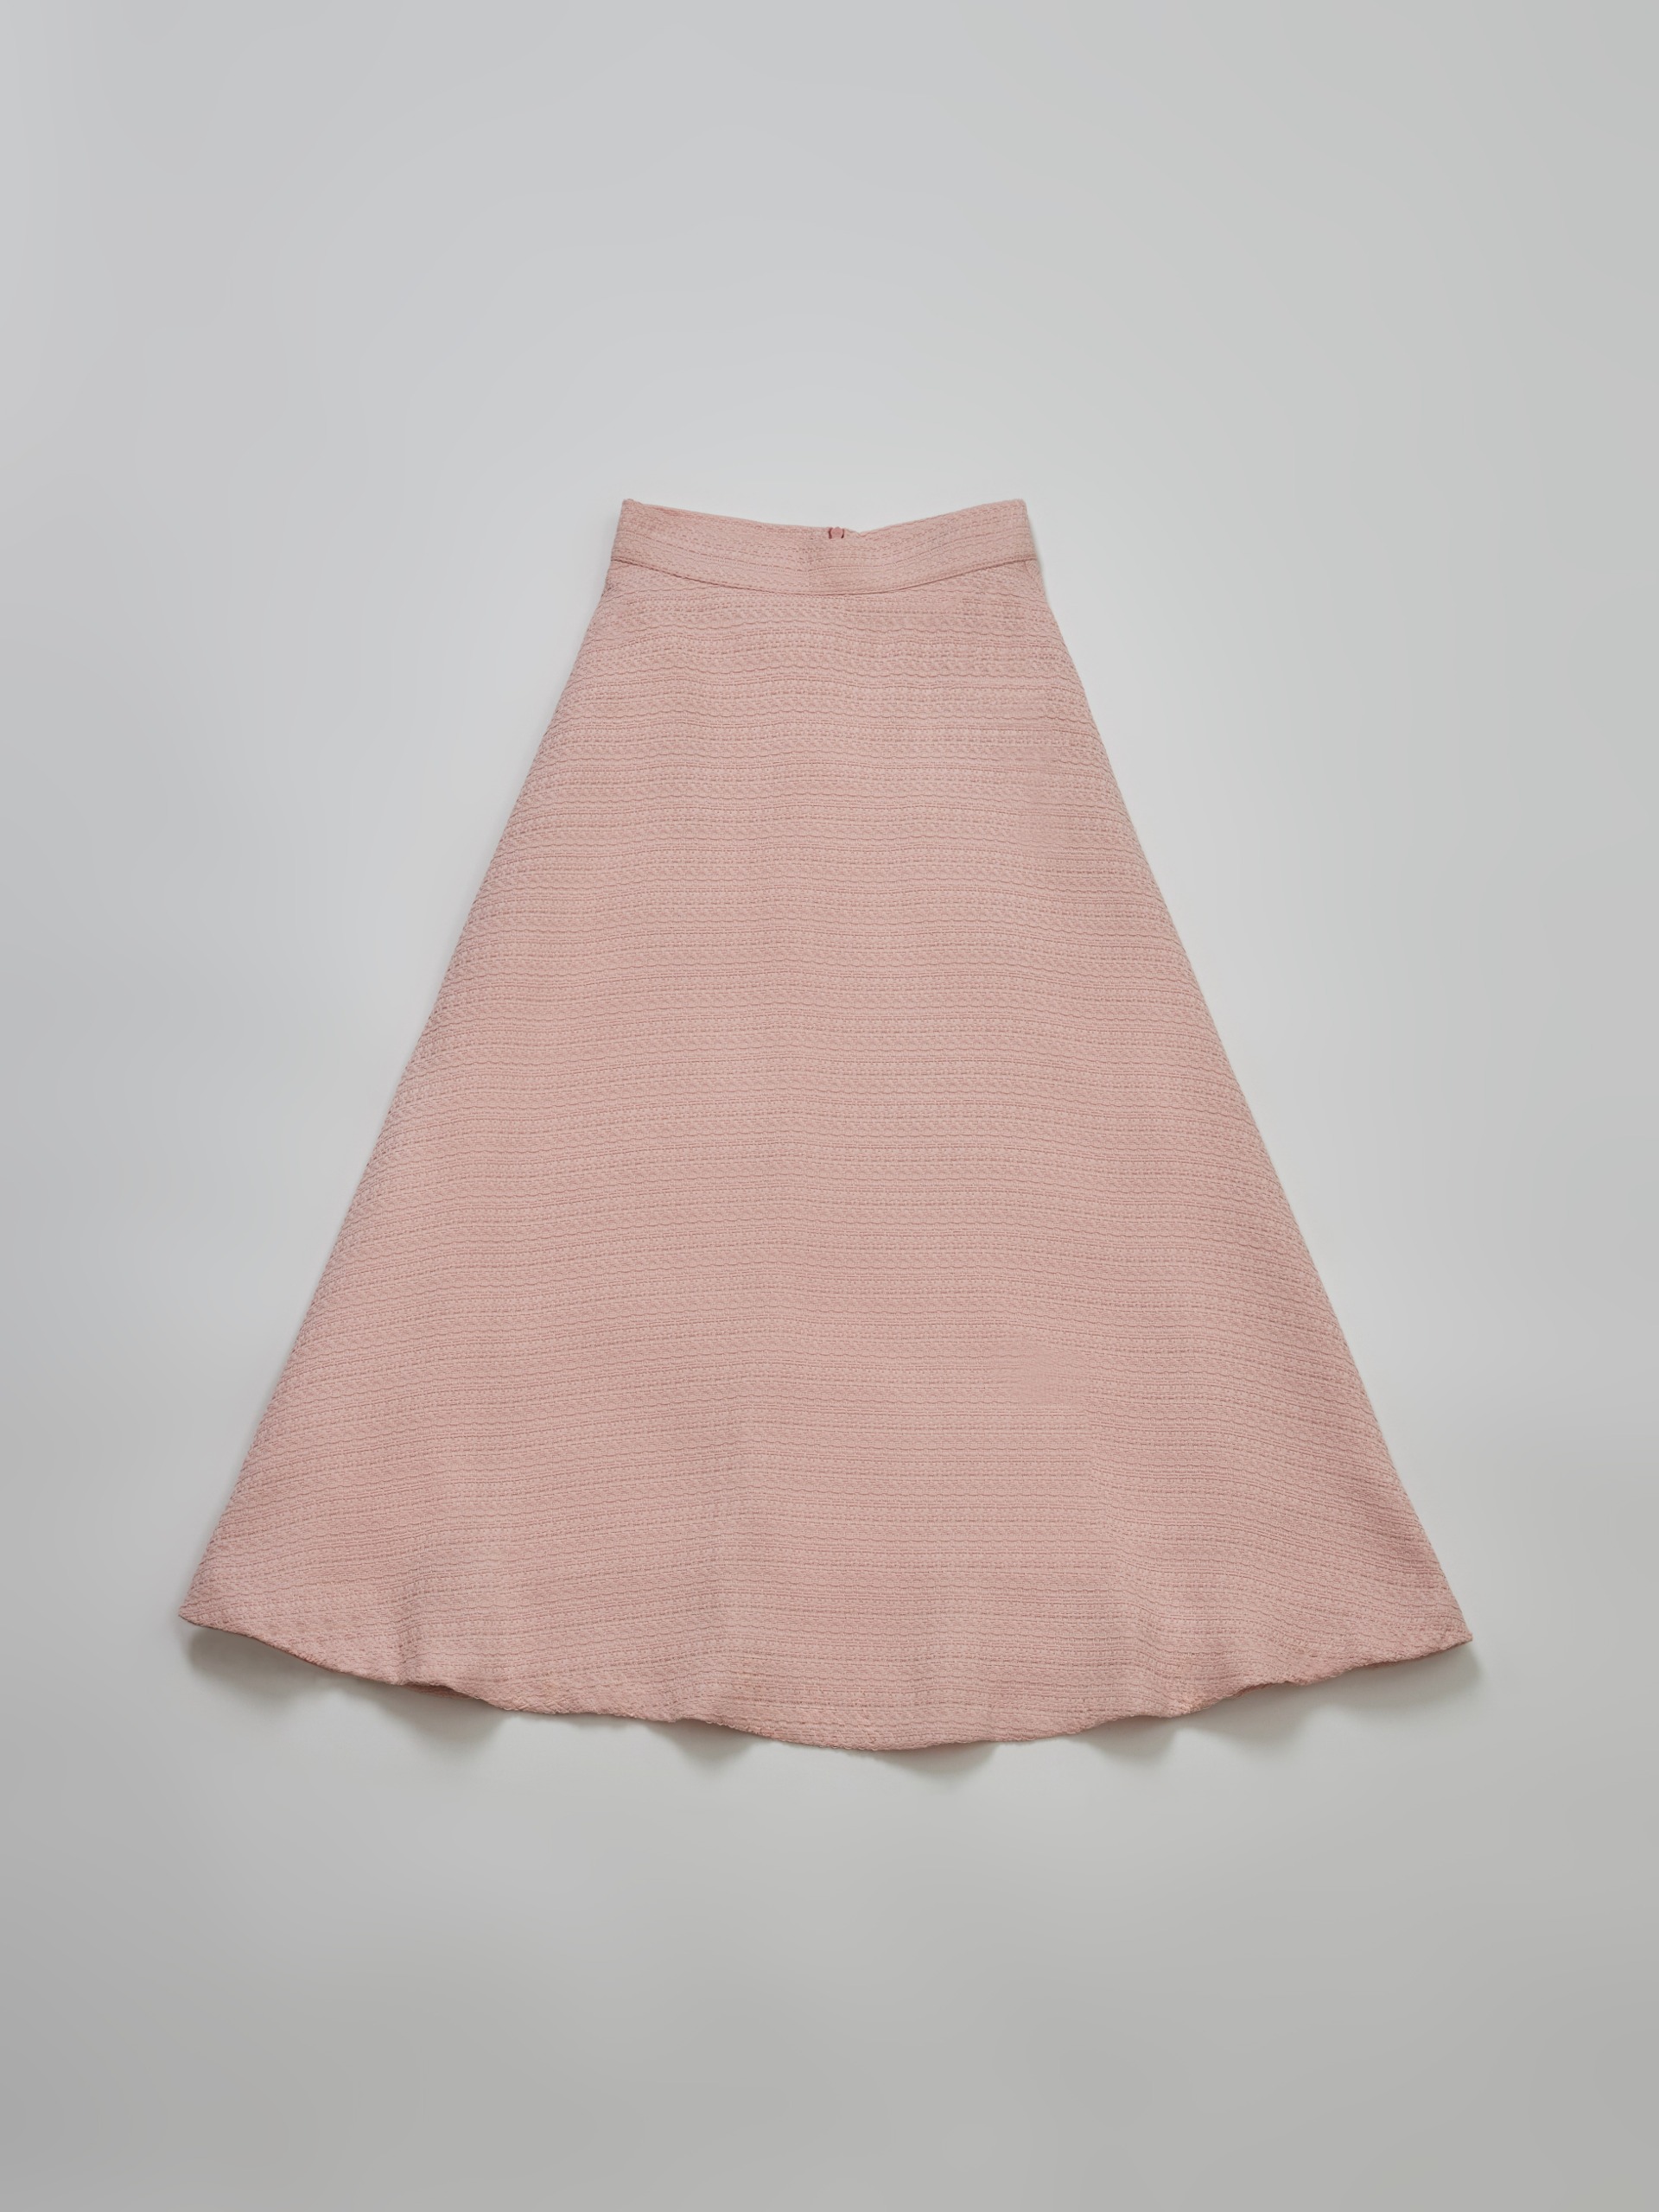 Merrill tweed skirt [PINK][Departure today]